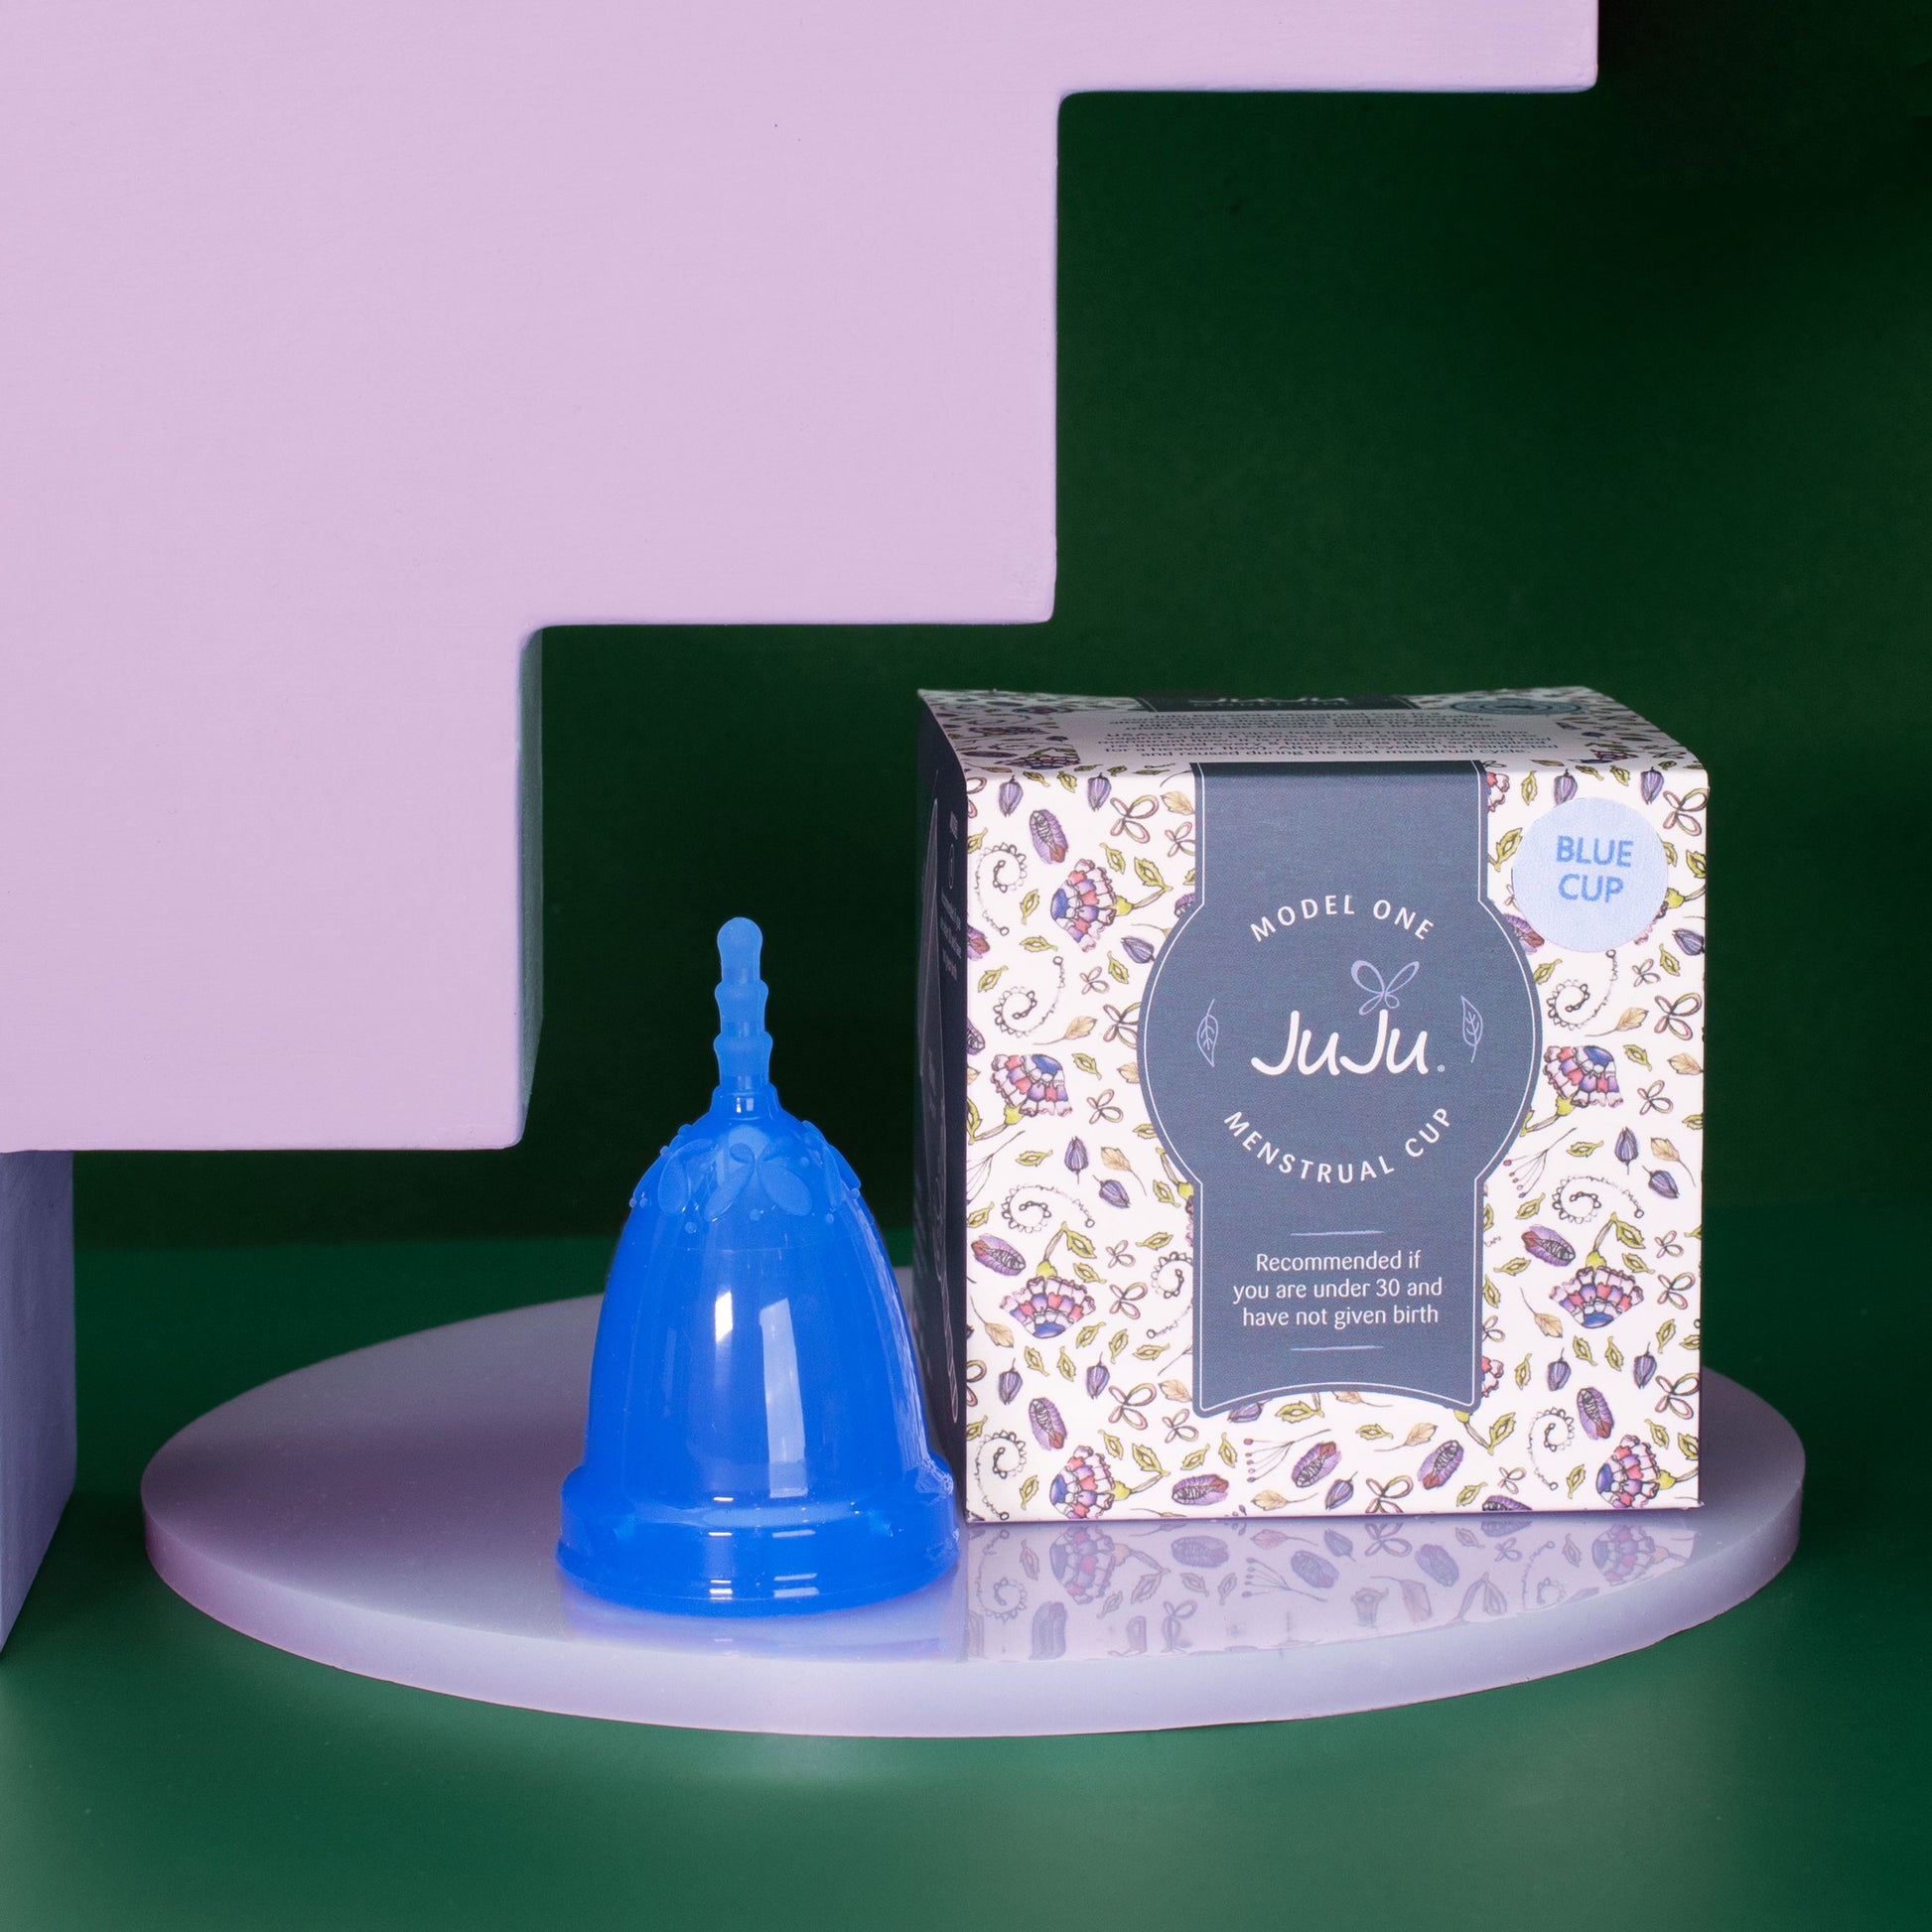 JuJu Australia menstrual cup in blue Model One